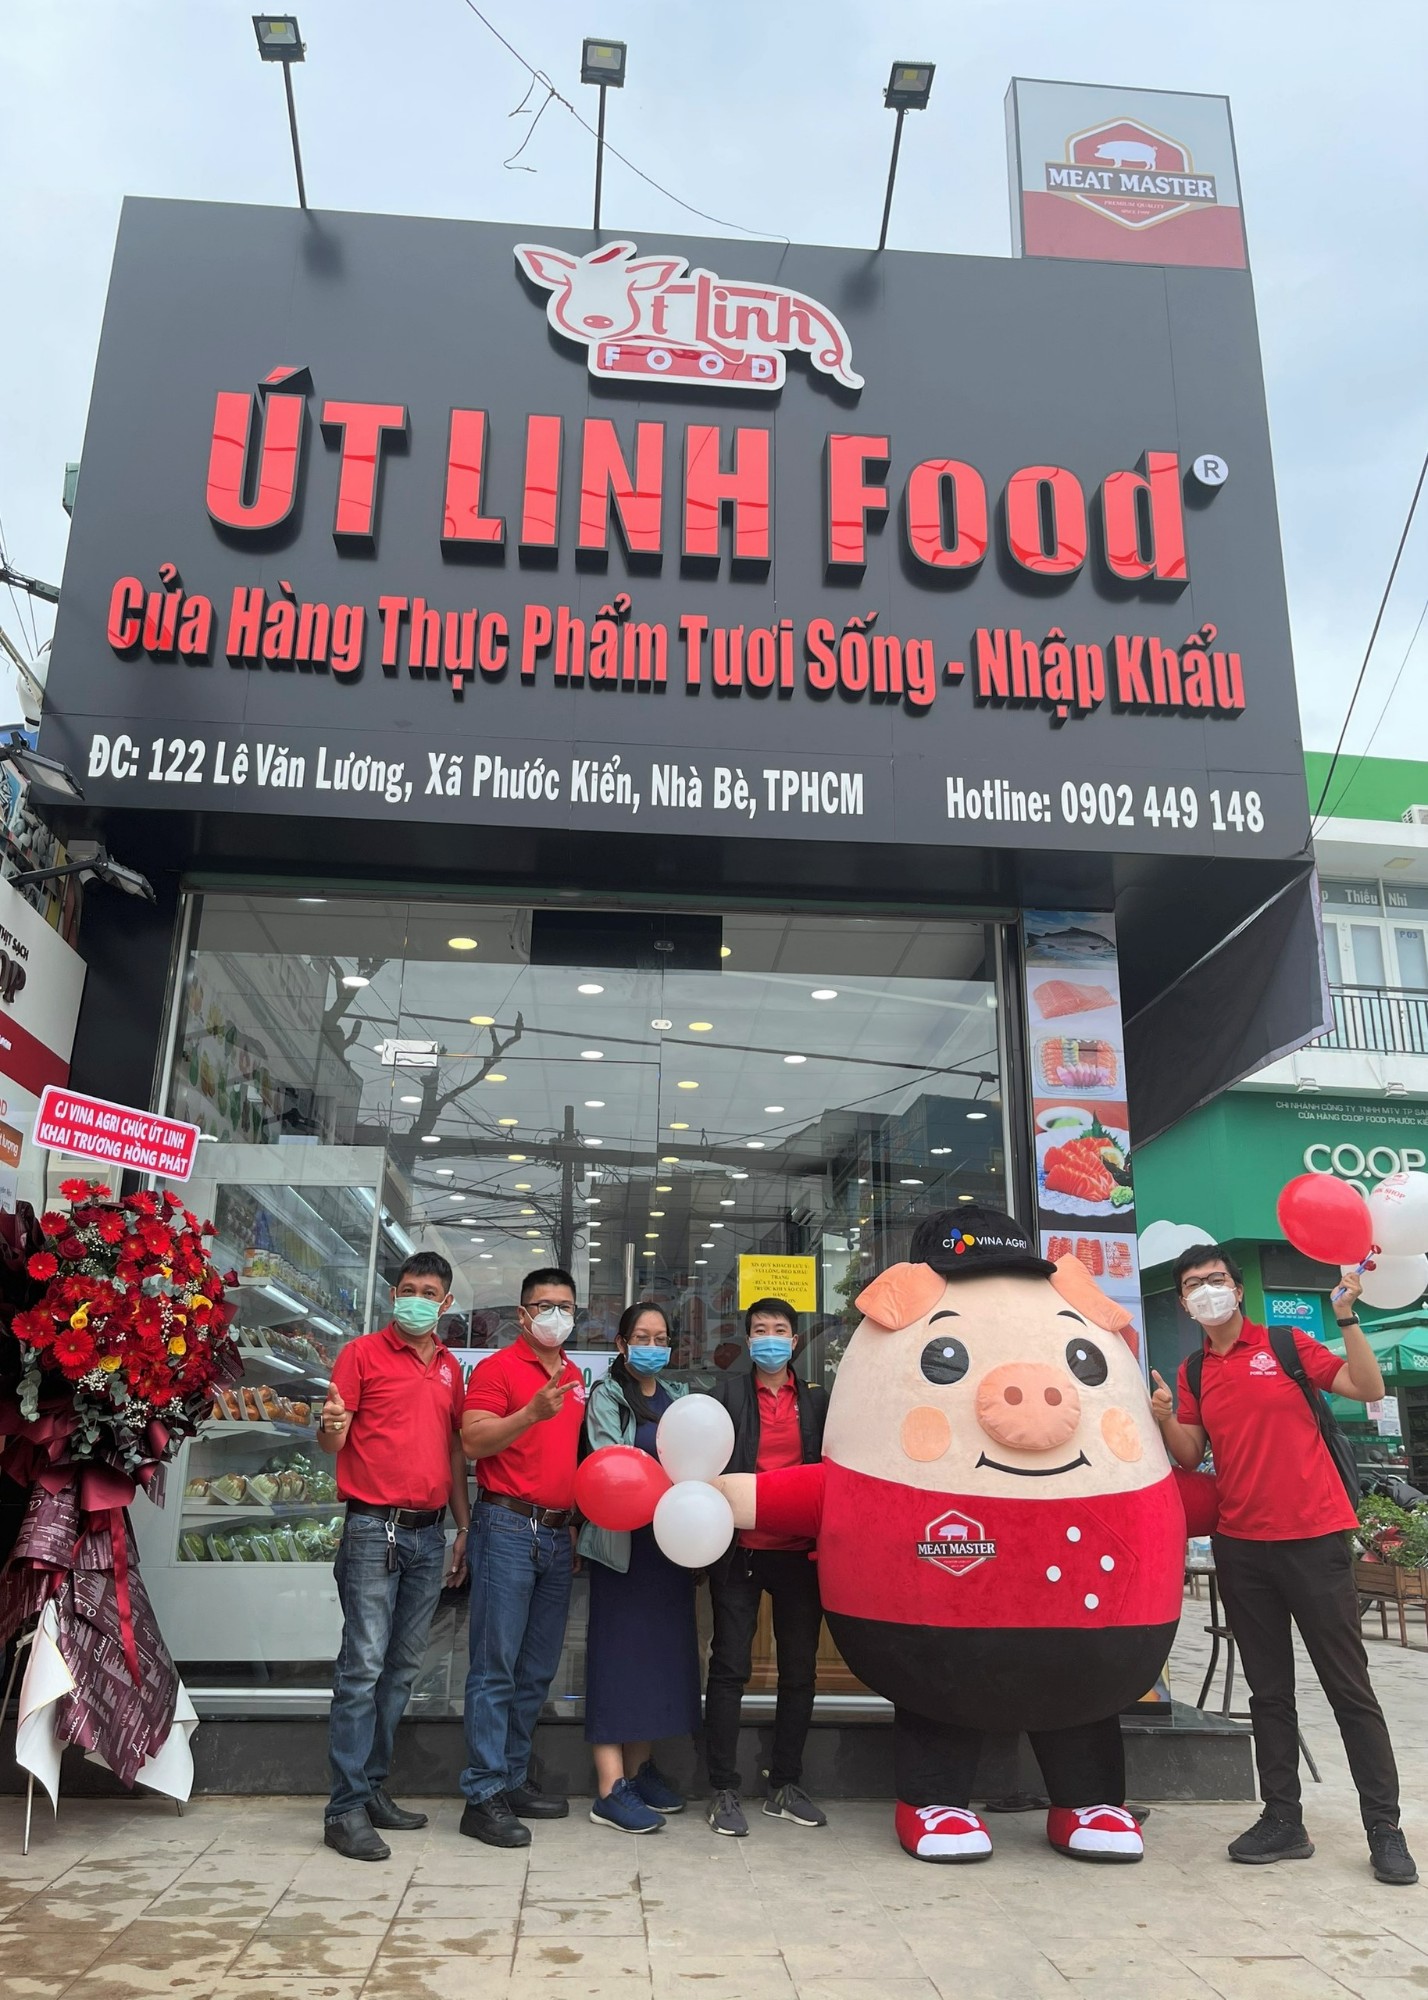 Pork Shop Út Linh Food: 122 Lê Văn Lương, xã Phước Kiển, Nhà Bè.